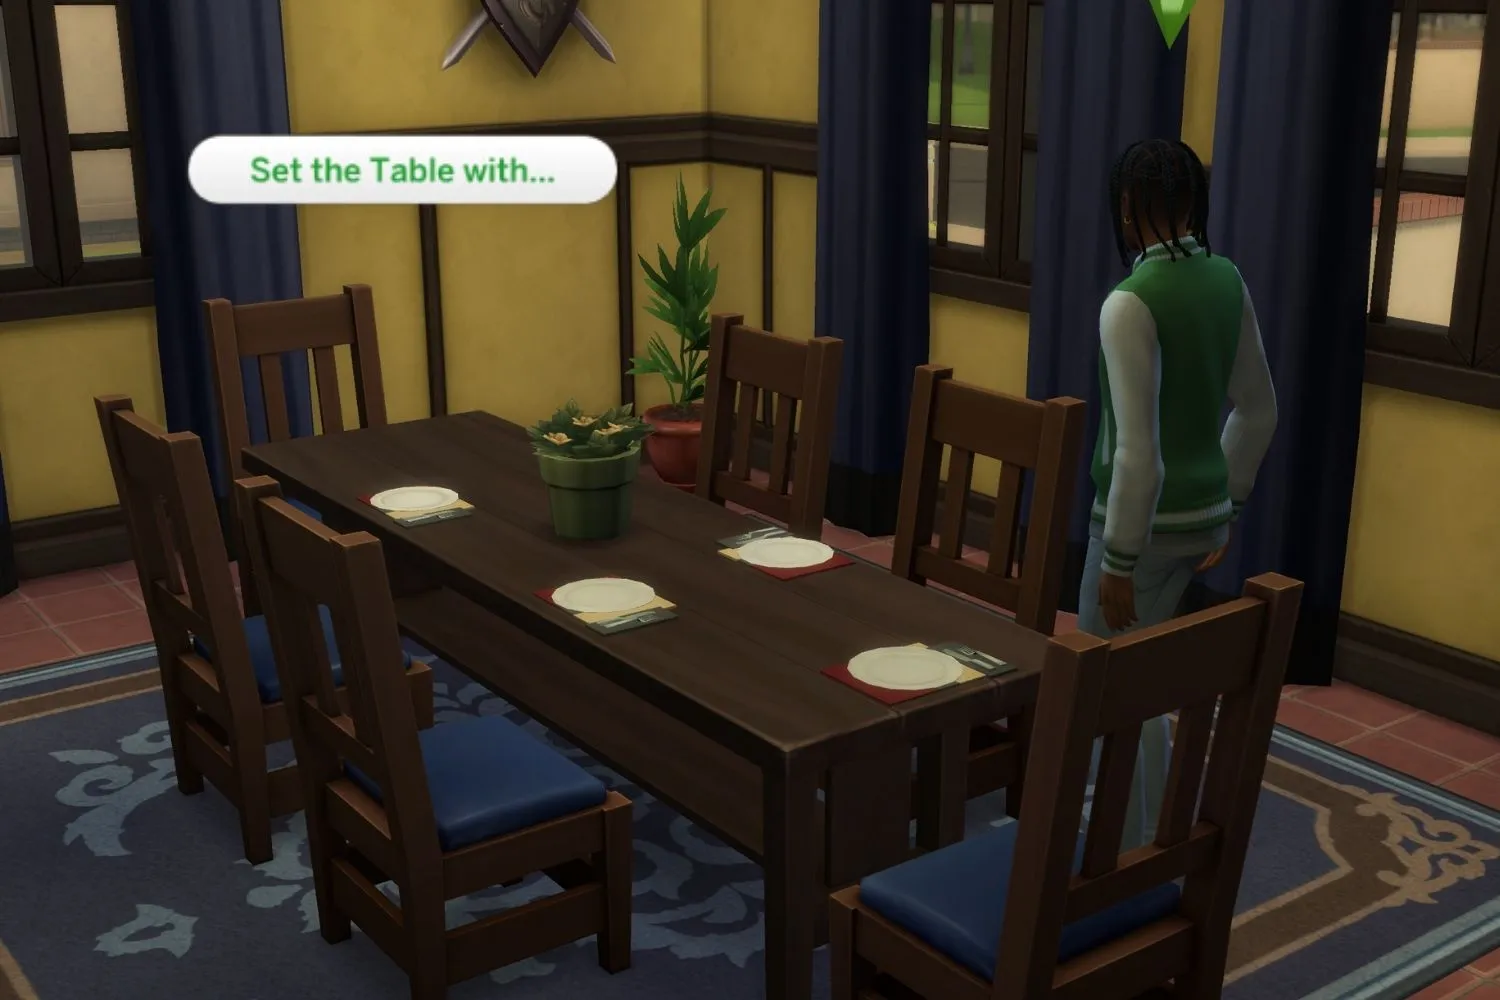 십대 시뮬레이션 캐릭터들이 저녁 식사를 위해 식탁을 차려놓고 있습니다.